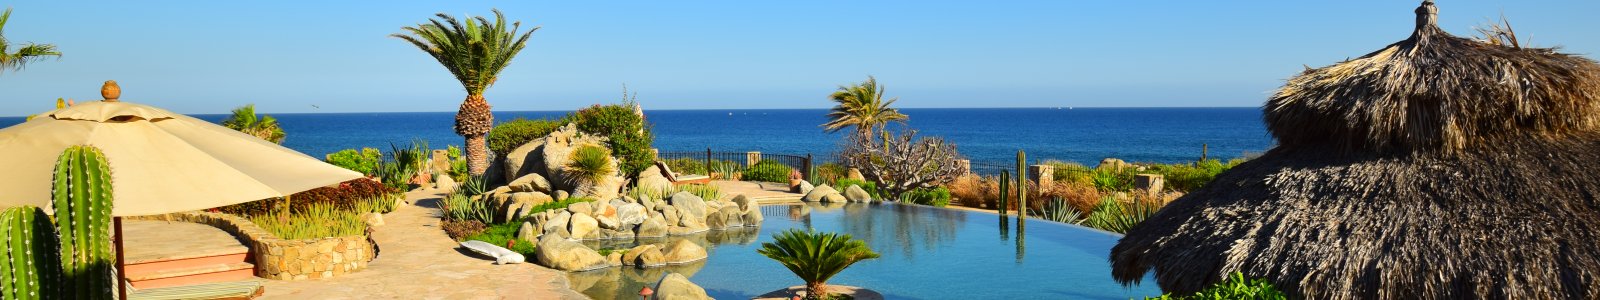 Los Cabos Corridor Homes for Rent | Luxury Homes & Condos in Los Cabos